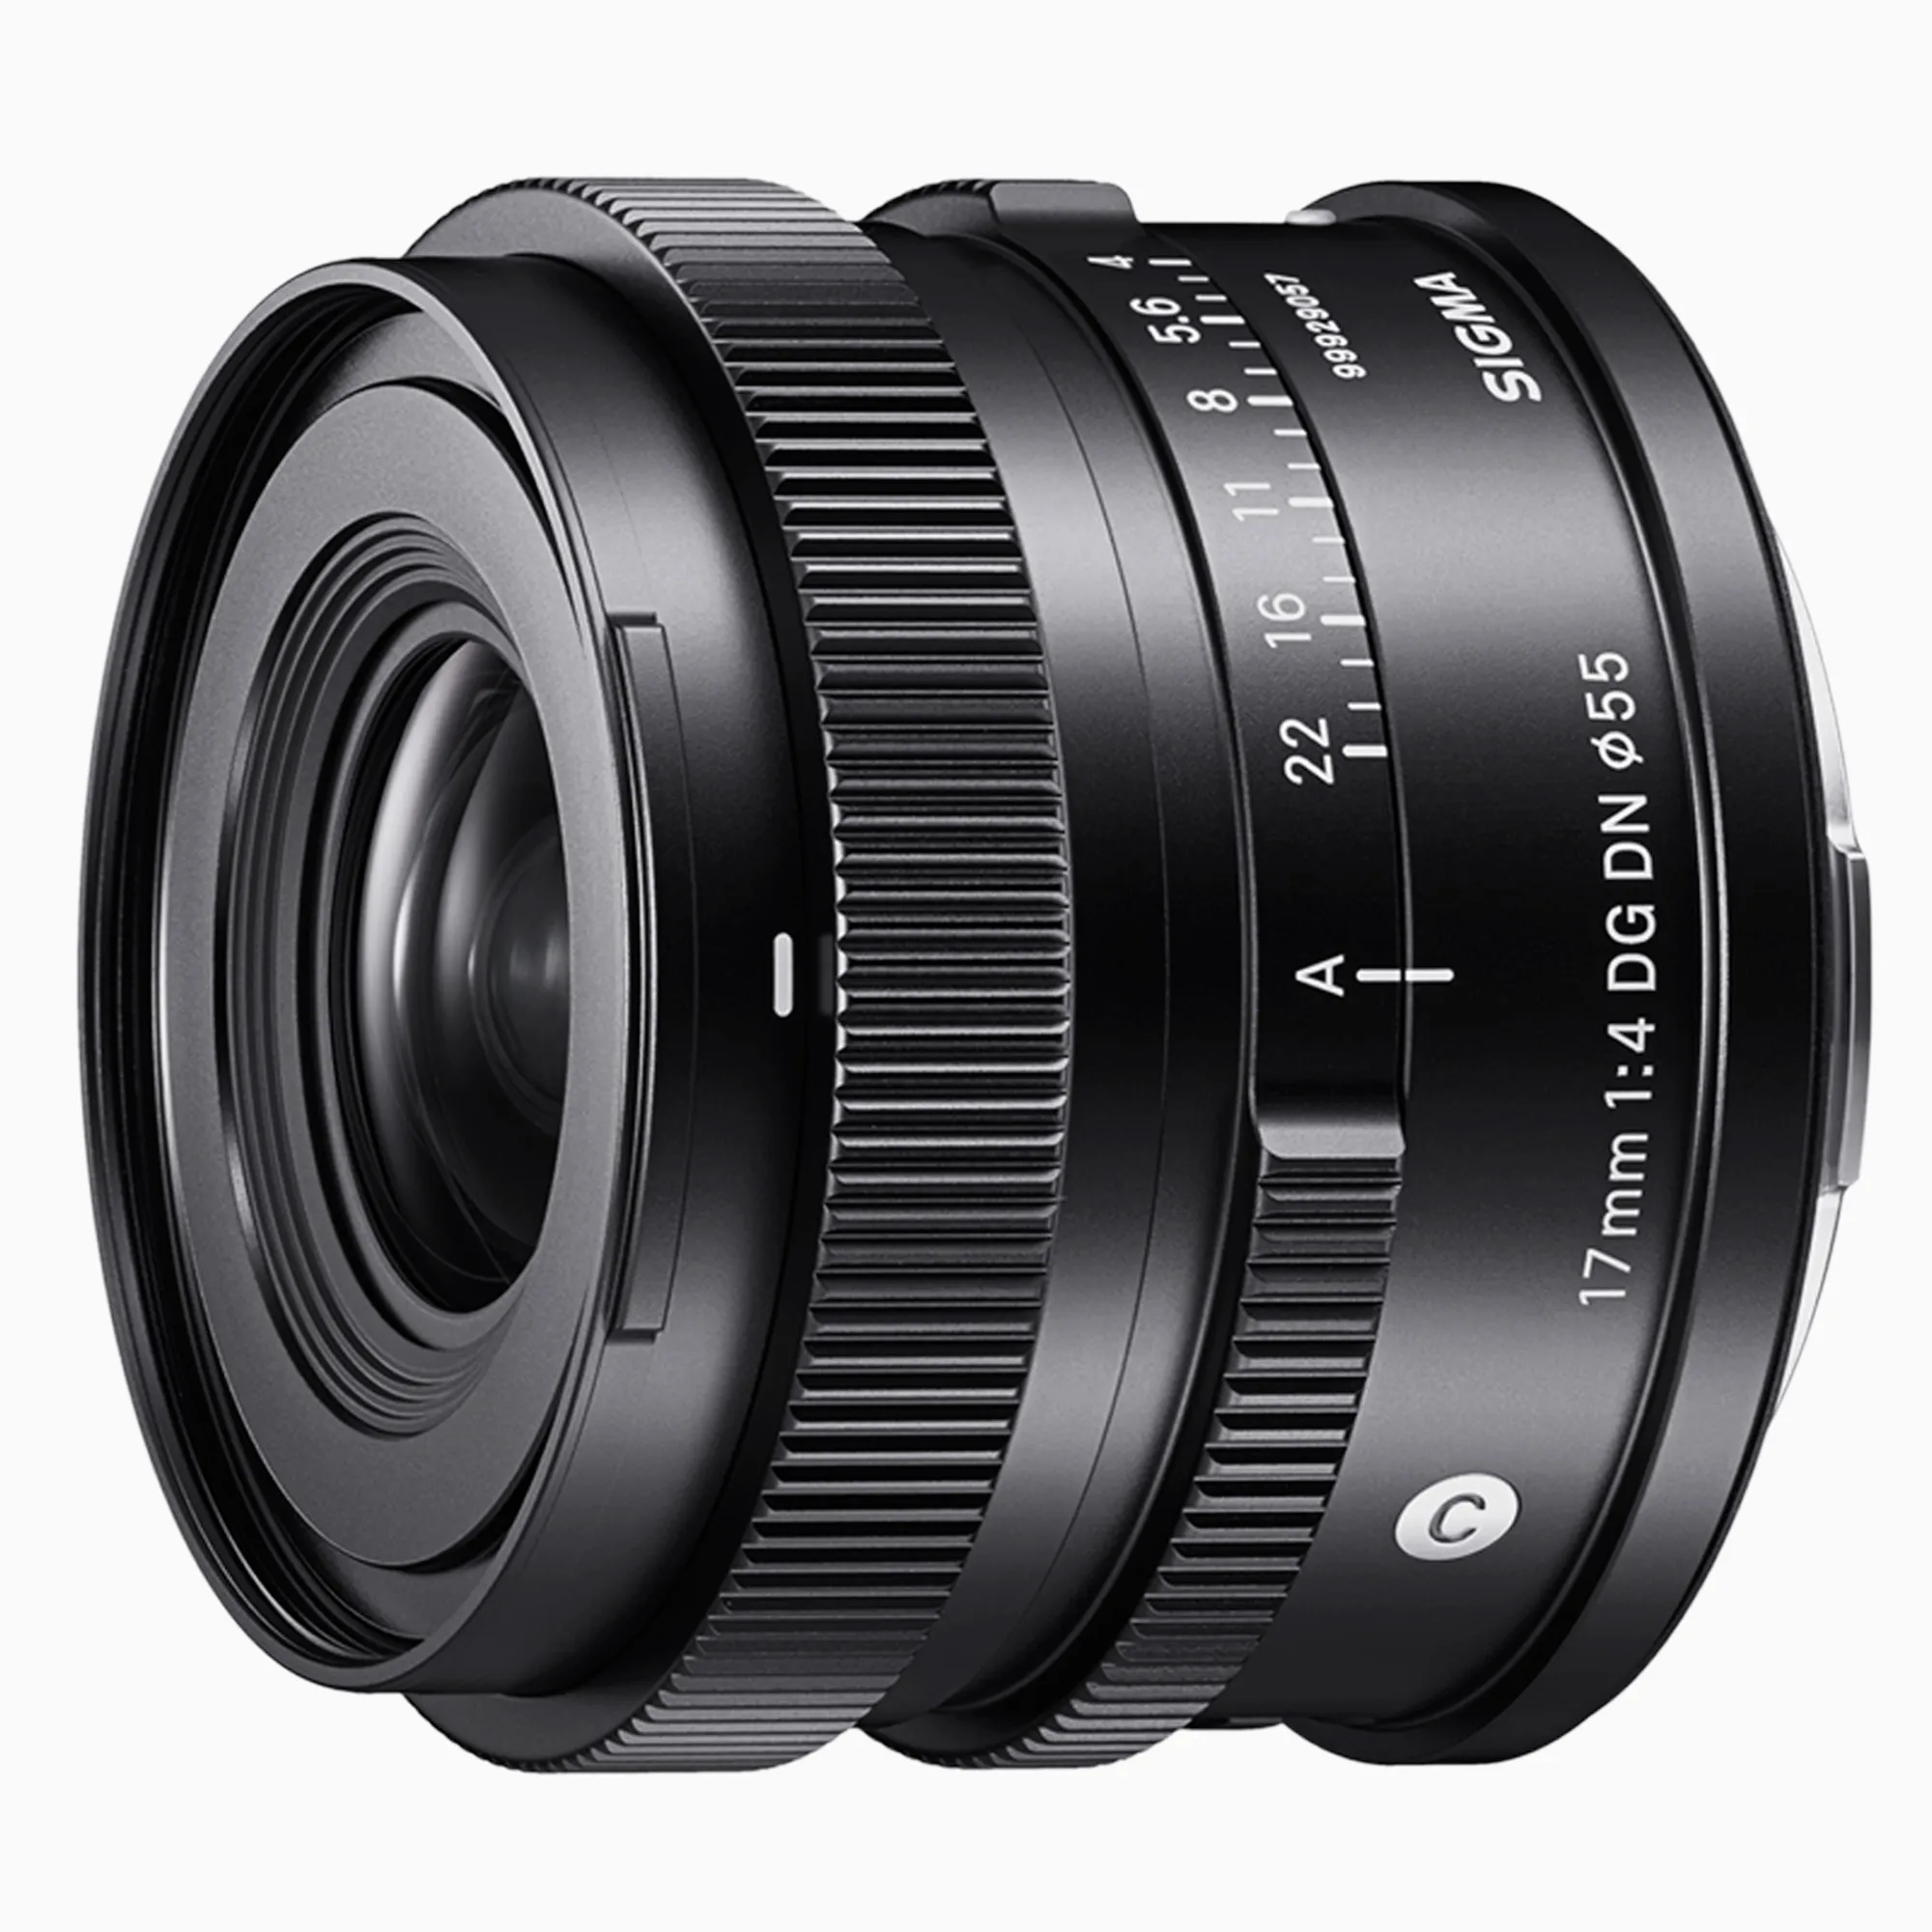 Sigma ra mắt hai ống kính 17mm F4 DG DN và 50mm F2 DG DN dành cho máy ảnh full frame